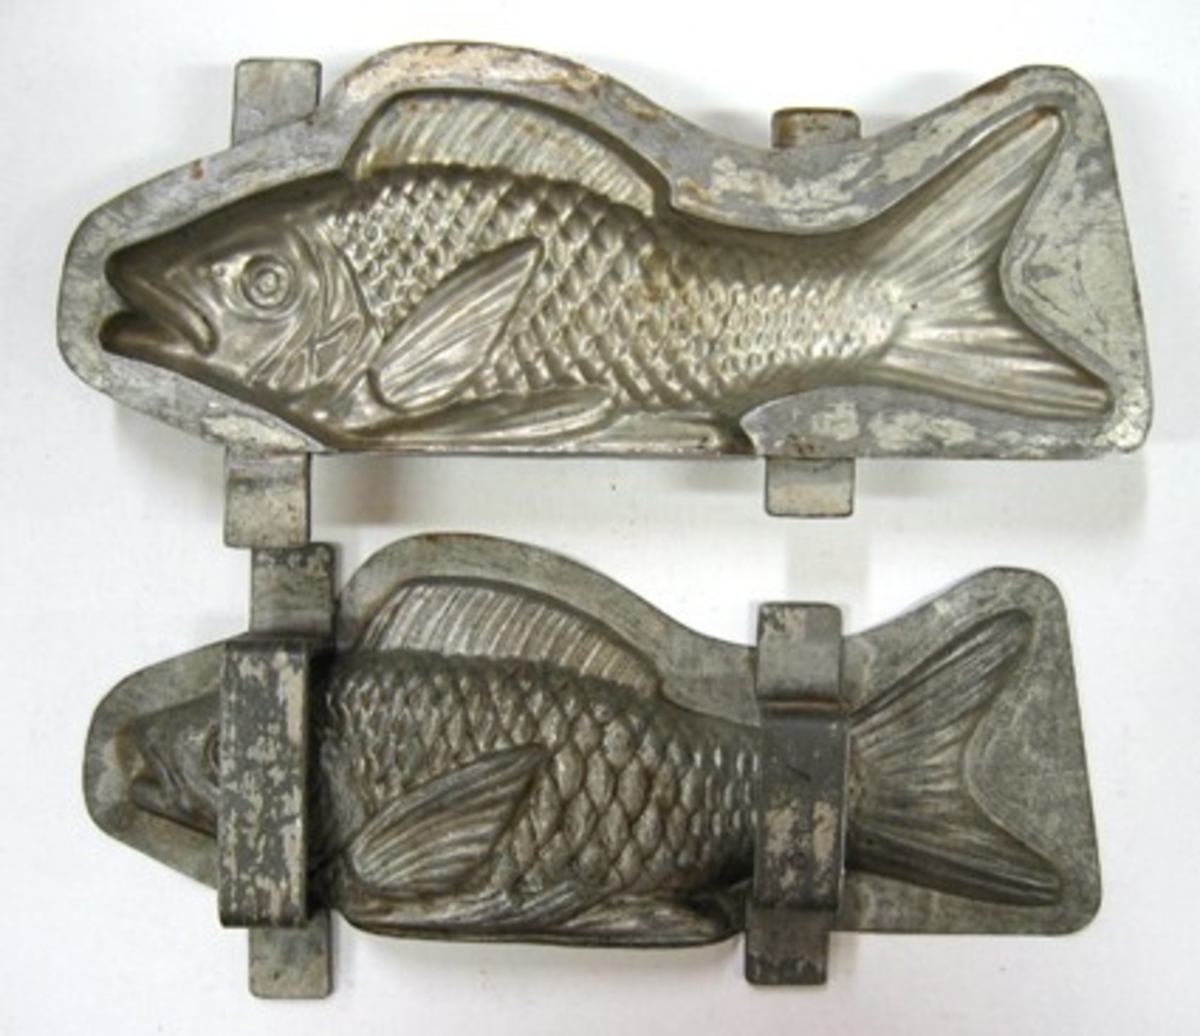 Gjutform i två delar i form av en fisk.